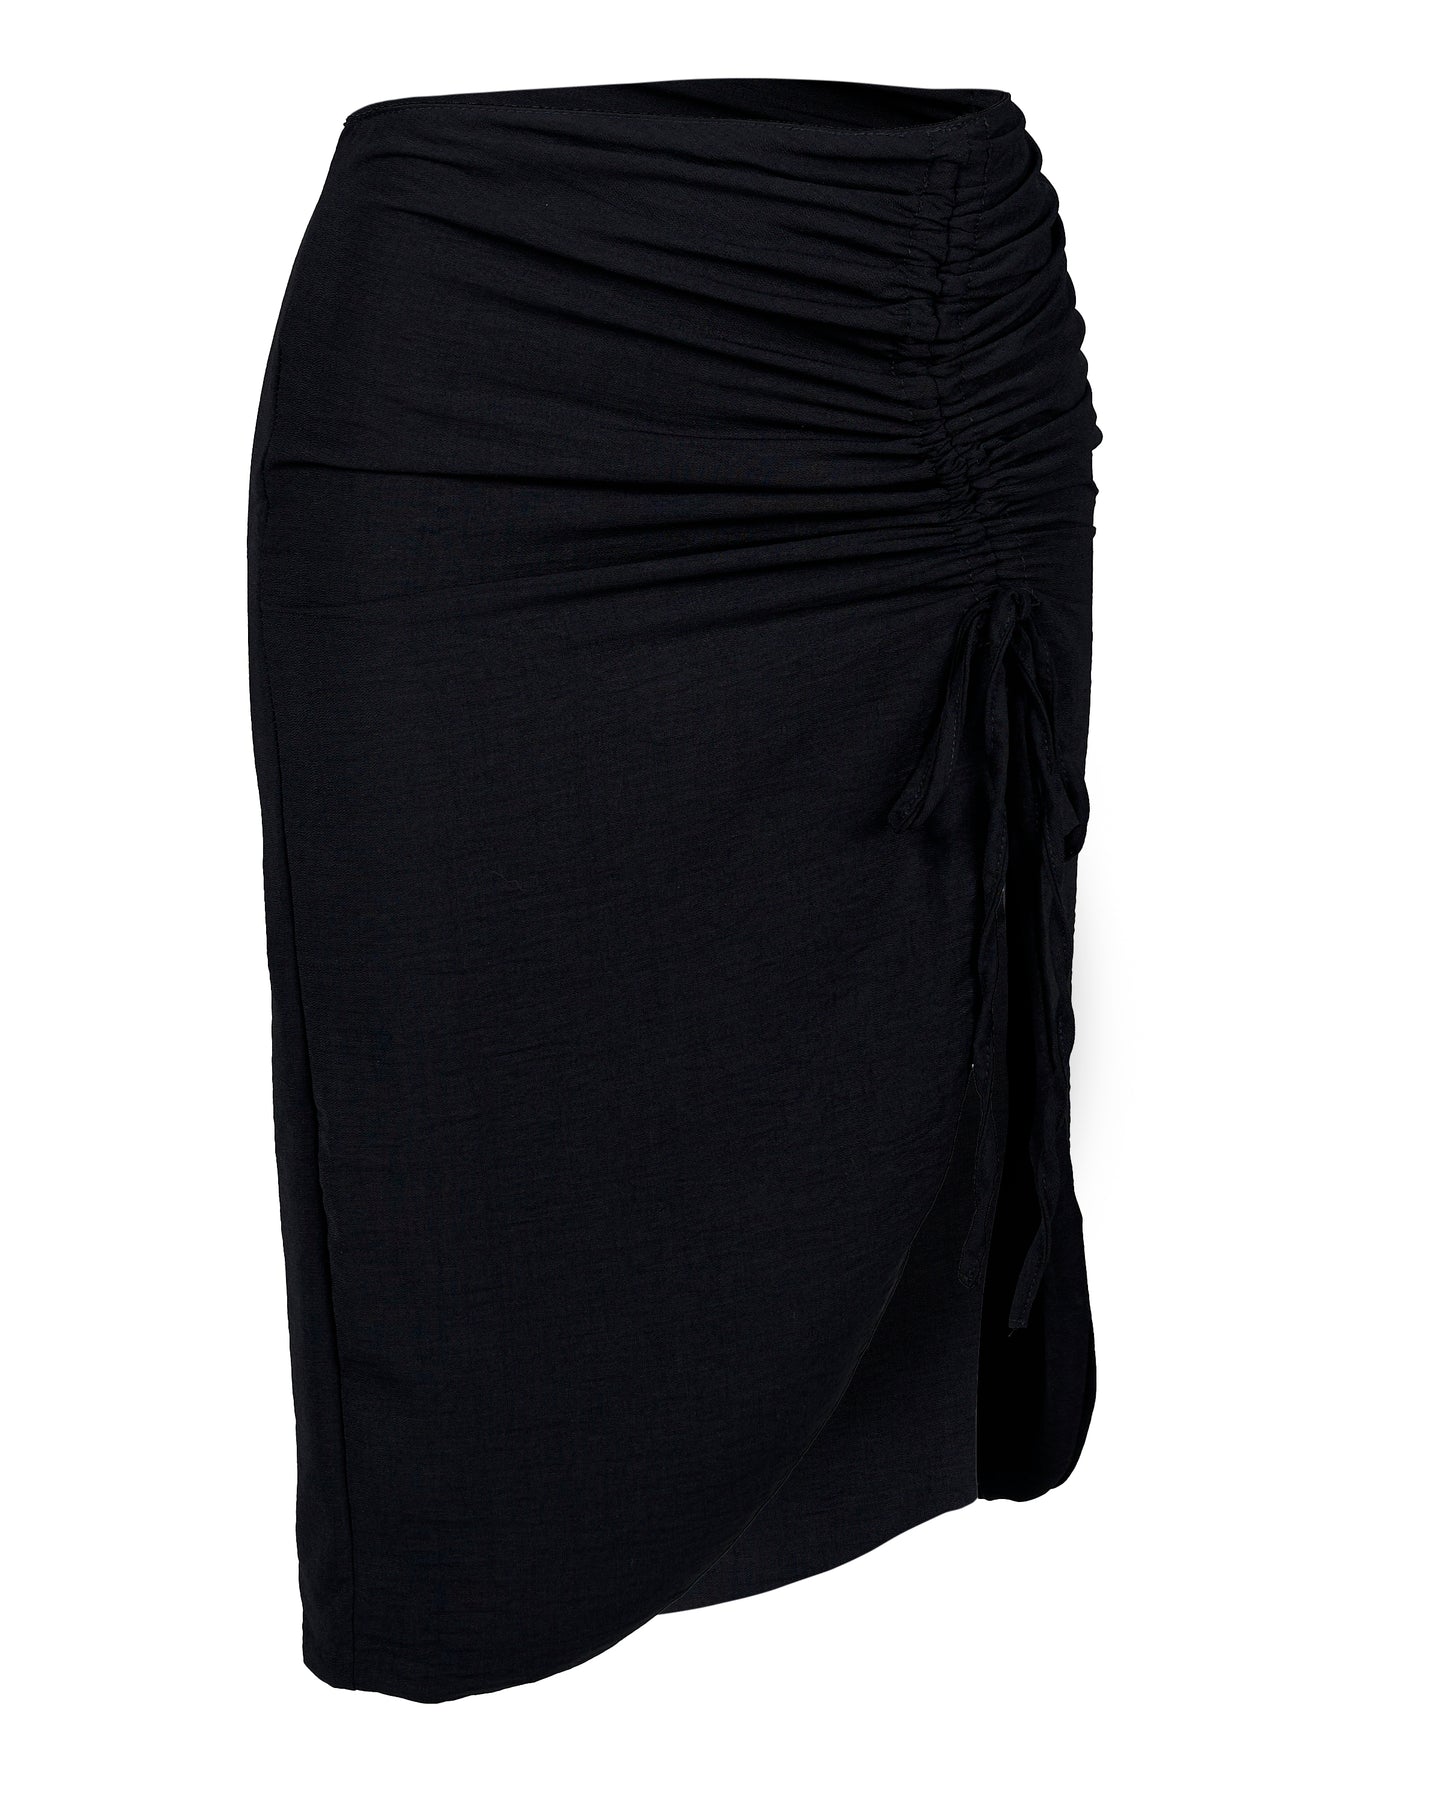 Lanai Skirt Black